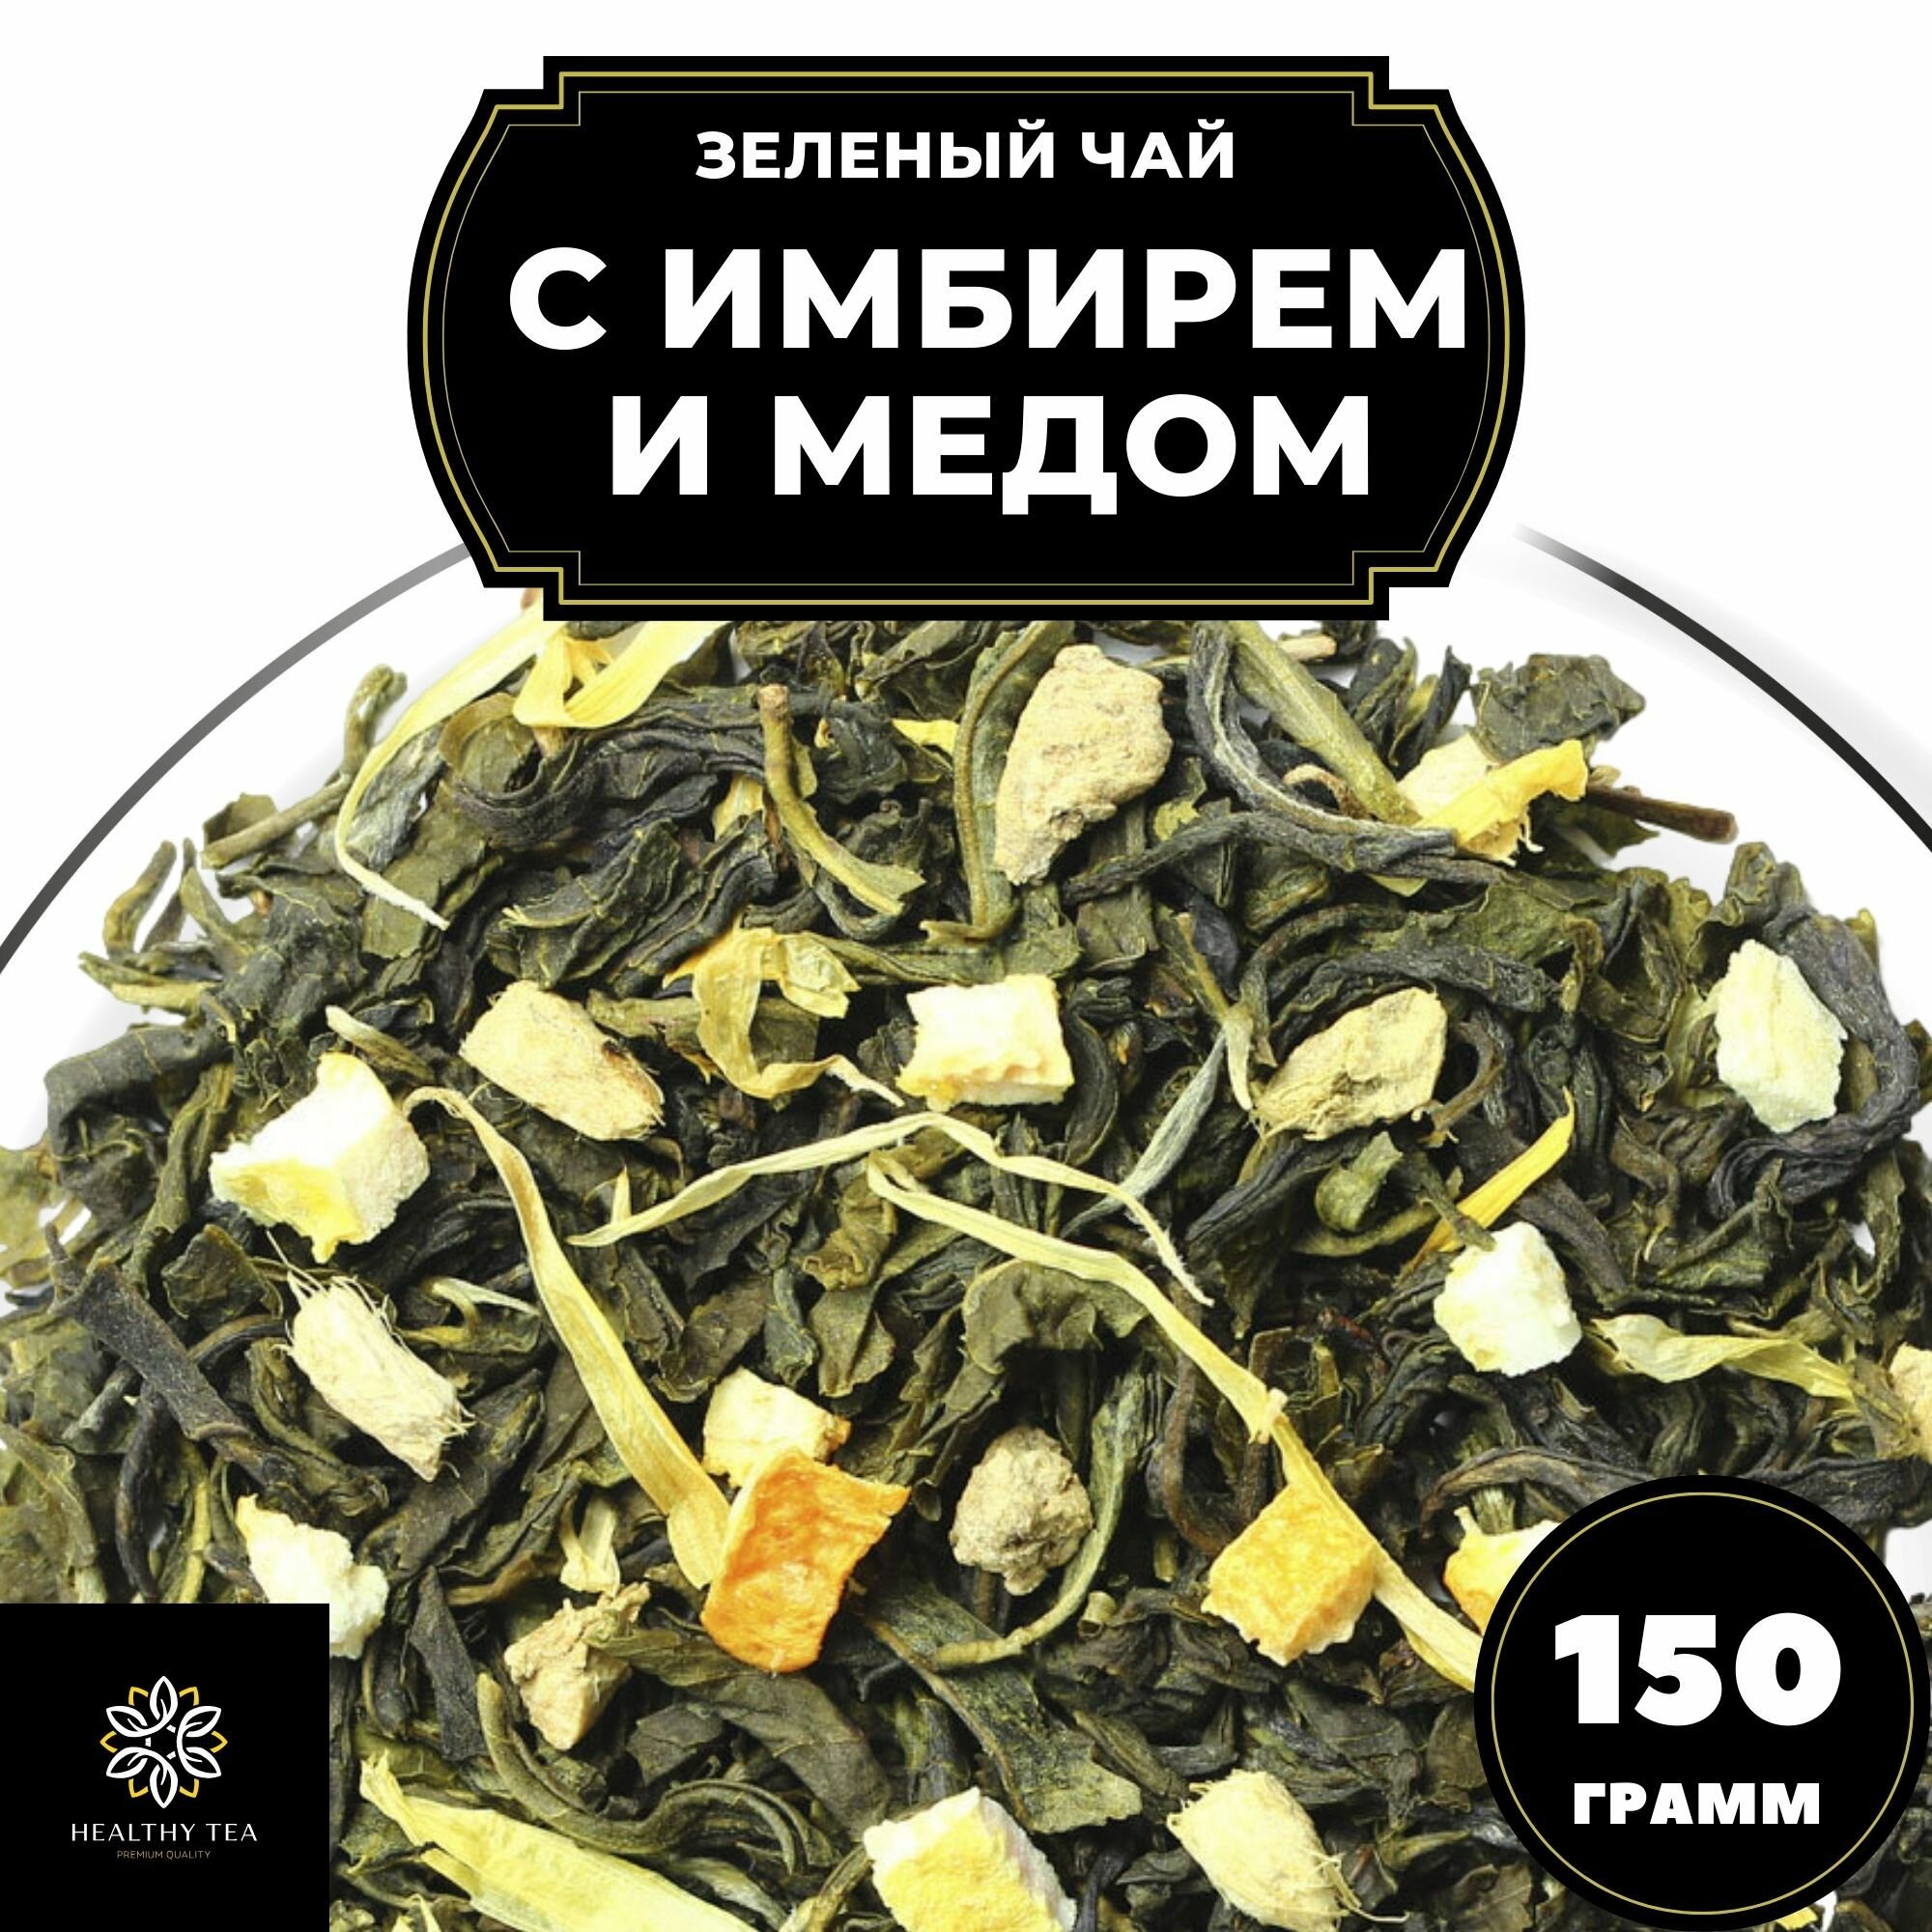 Китайский Зеленый чай с имбирем, лимоном и апельсином Имбирь-Мед Полезный чай / HEALTHY TEA, 150 г